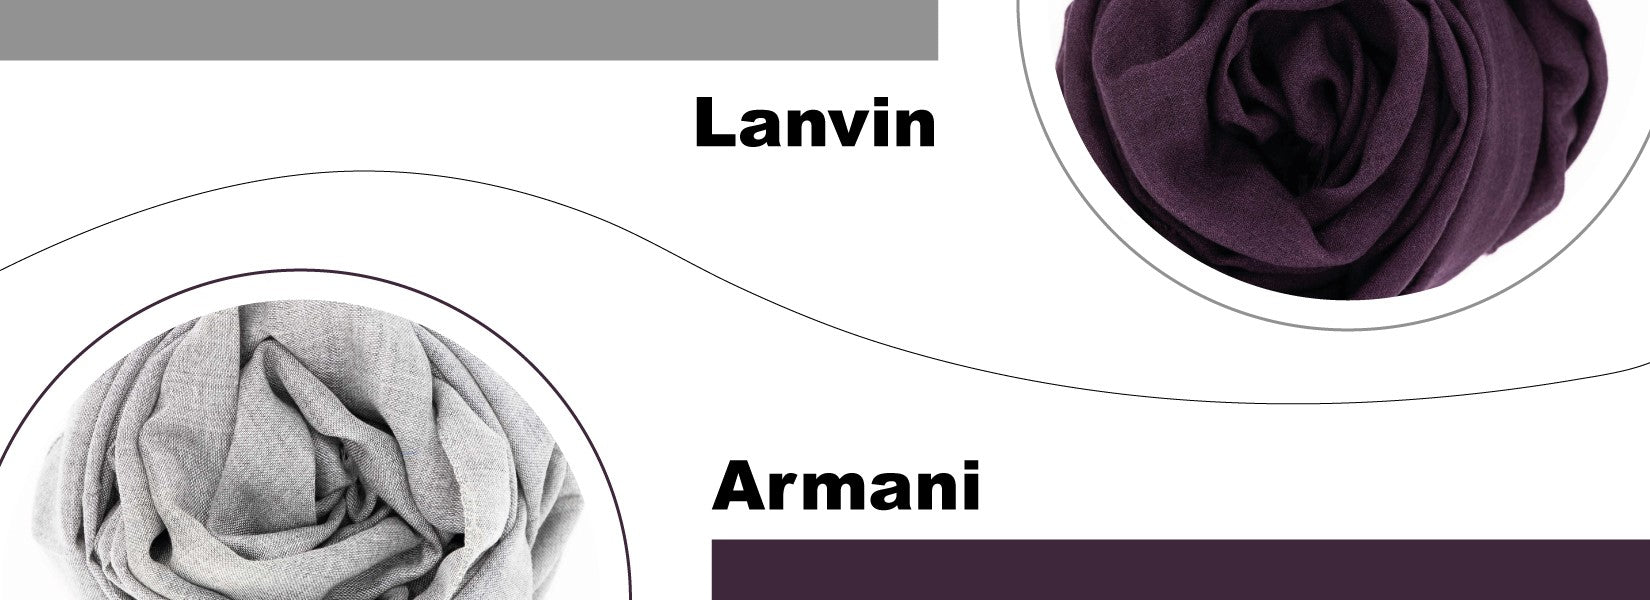 Sciarpe Armani & Lanvin a prezzi Outlet